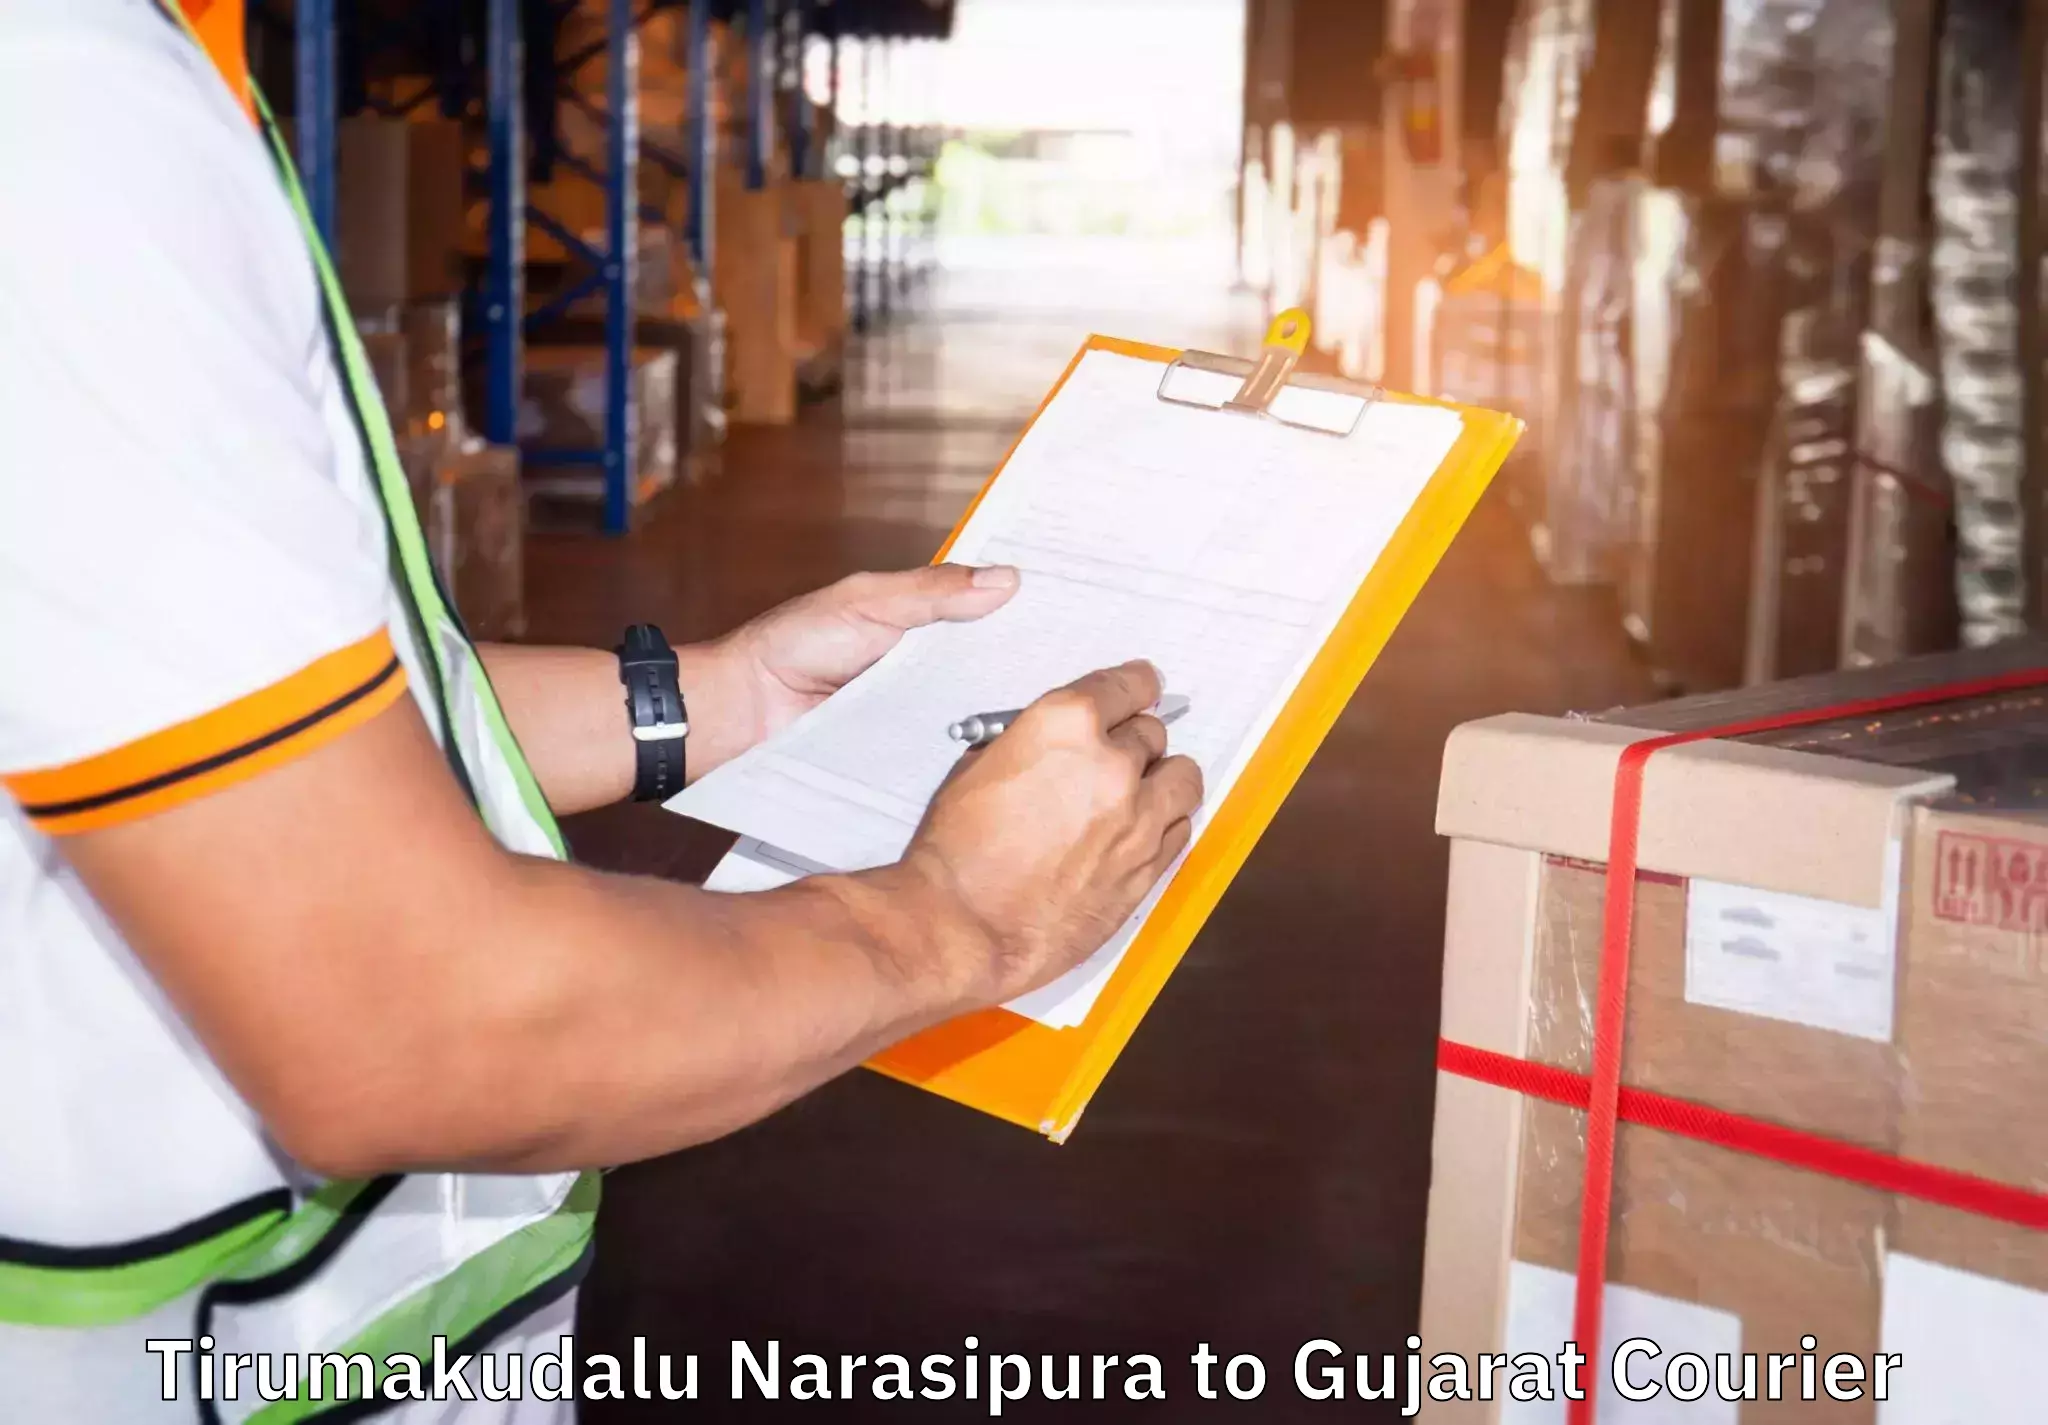 Specialized moving company Tirumakudalu Narasipura to Tarapur